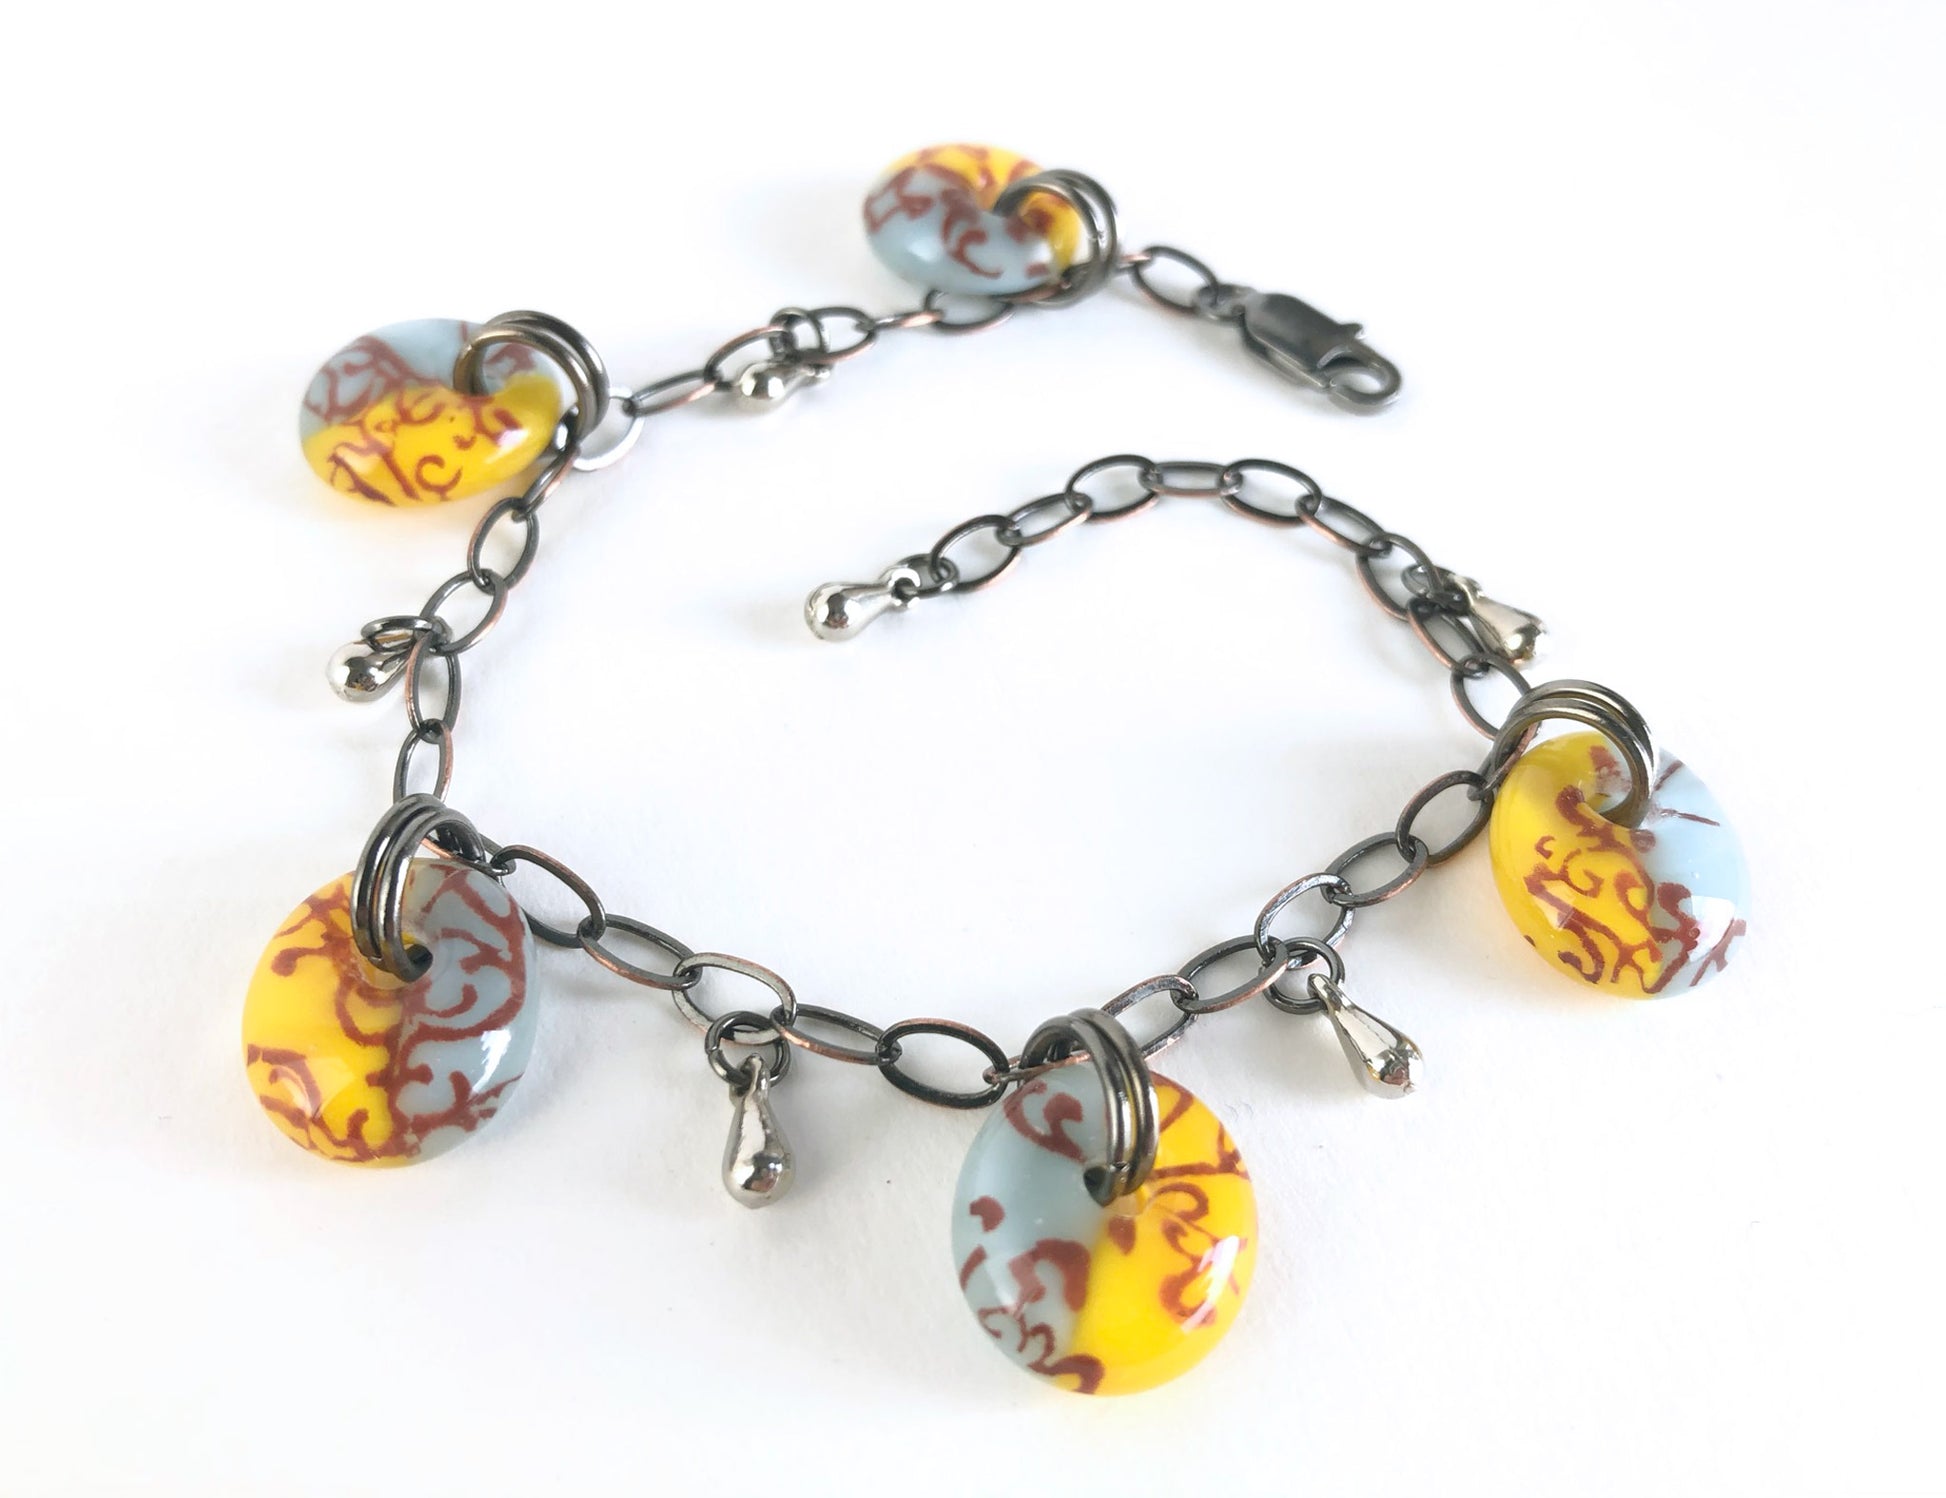 Adjustable antique bronze chain bracelet with vintage color glass drops.